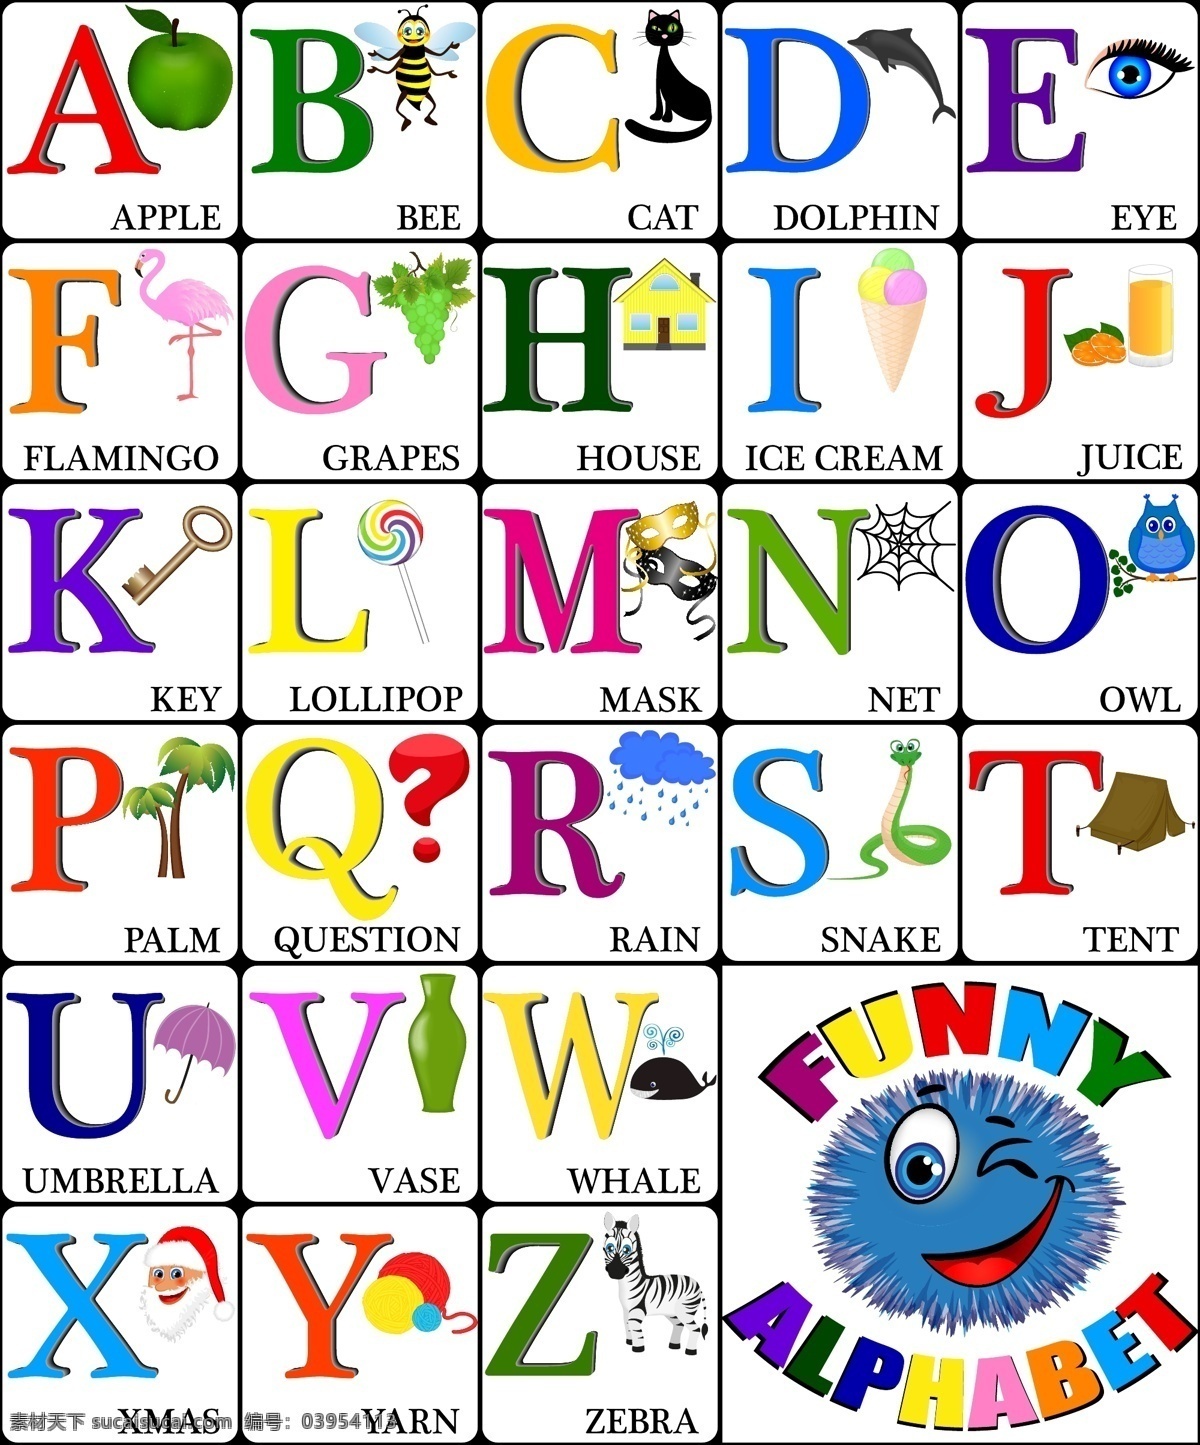 卡通字母 字母表 字母设计 英文字母 水果 蔬菜 手写 字母 英语字母表 英文 拼音 创意字母 时尚字母 时尚 手绘字母 装饰 字母主题 矢量